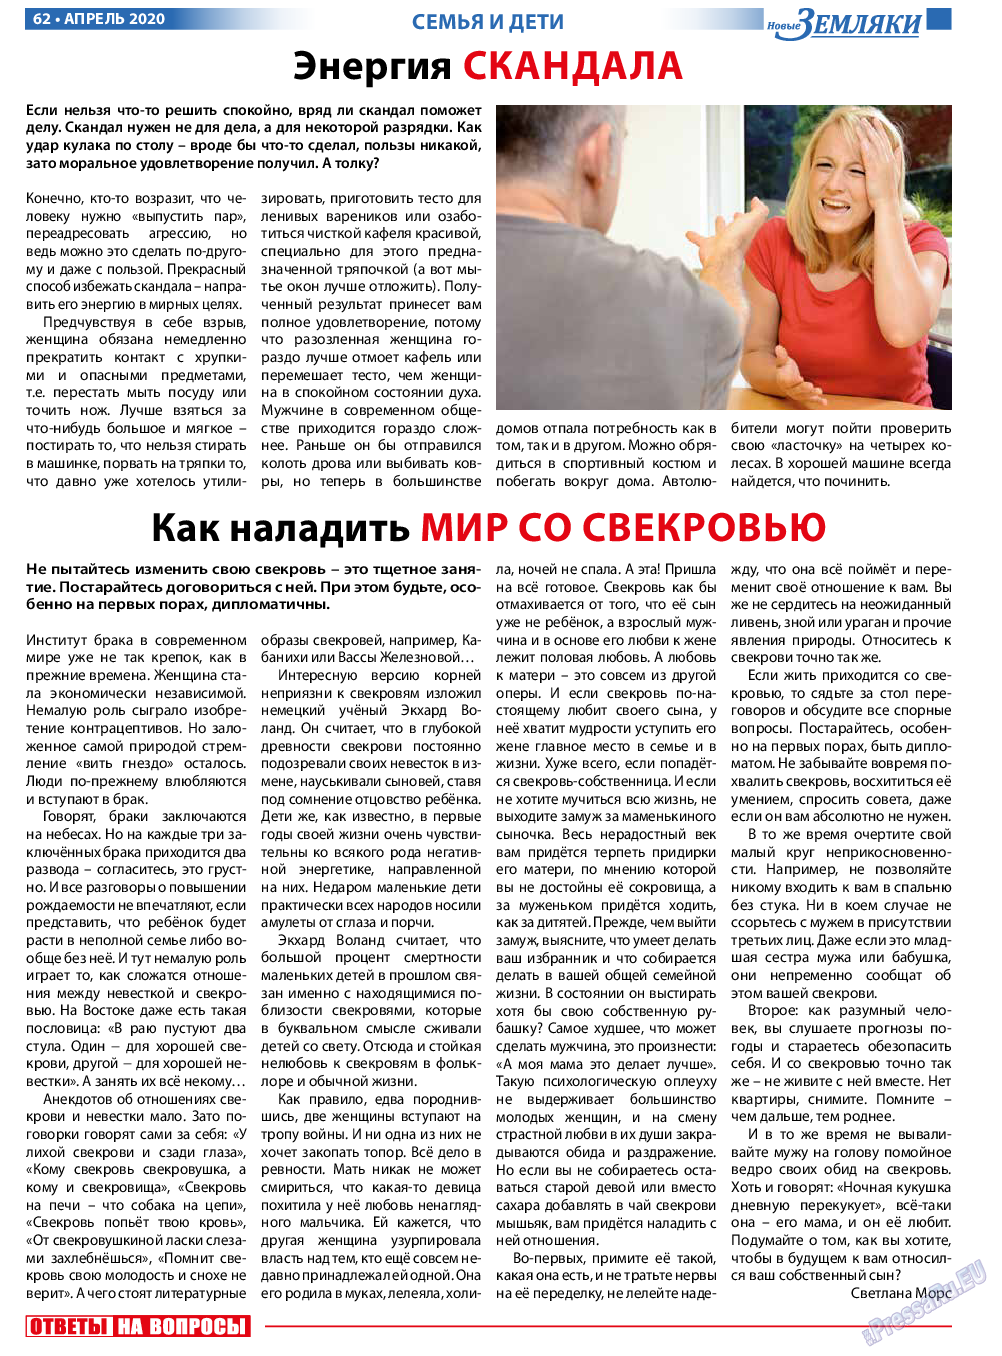 Новые Земляки, газета. 2020 №4 стр.62